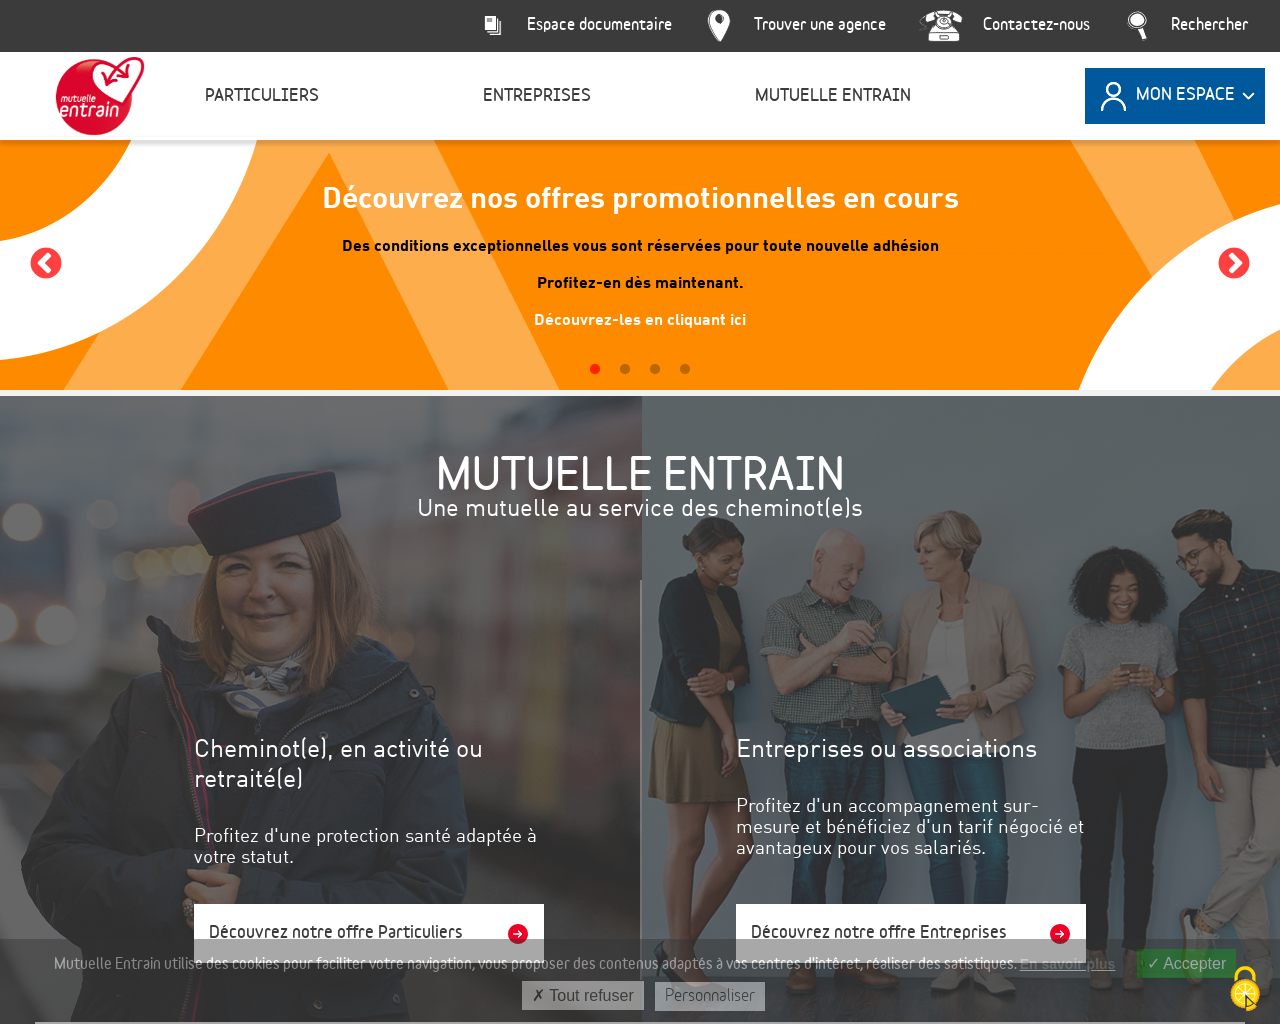 www.mutuelle-entrain.fr